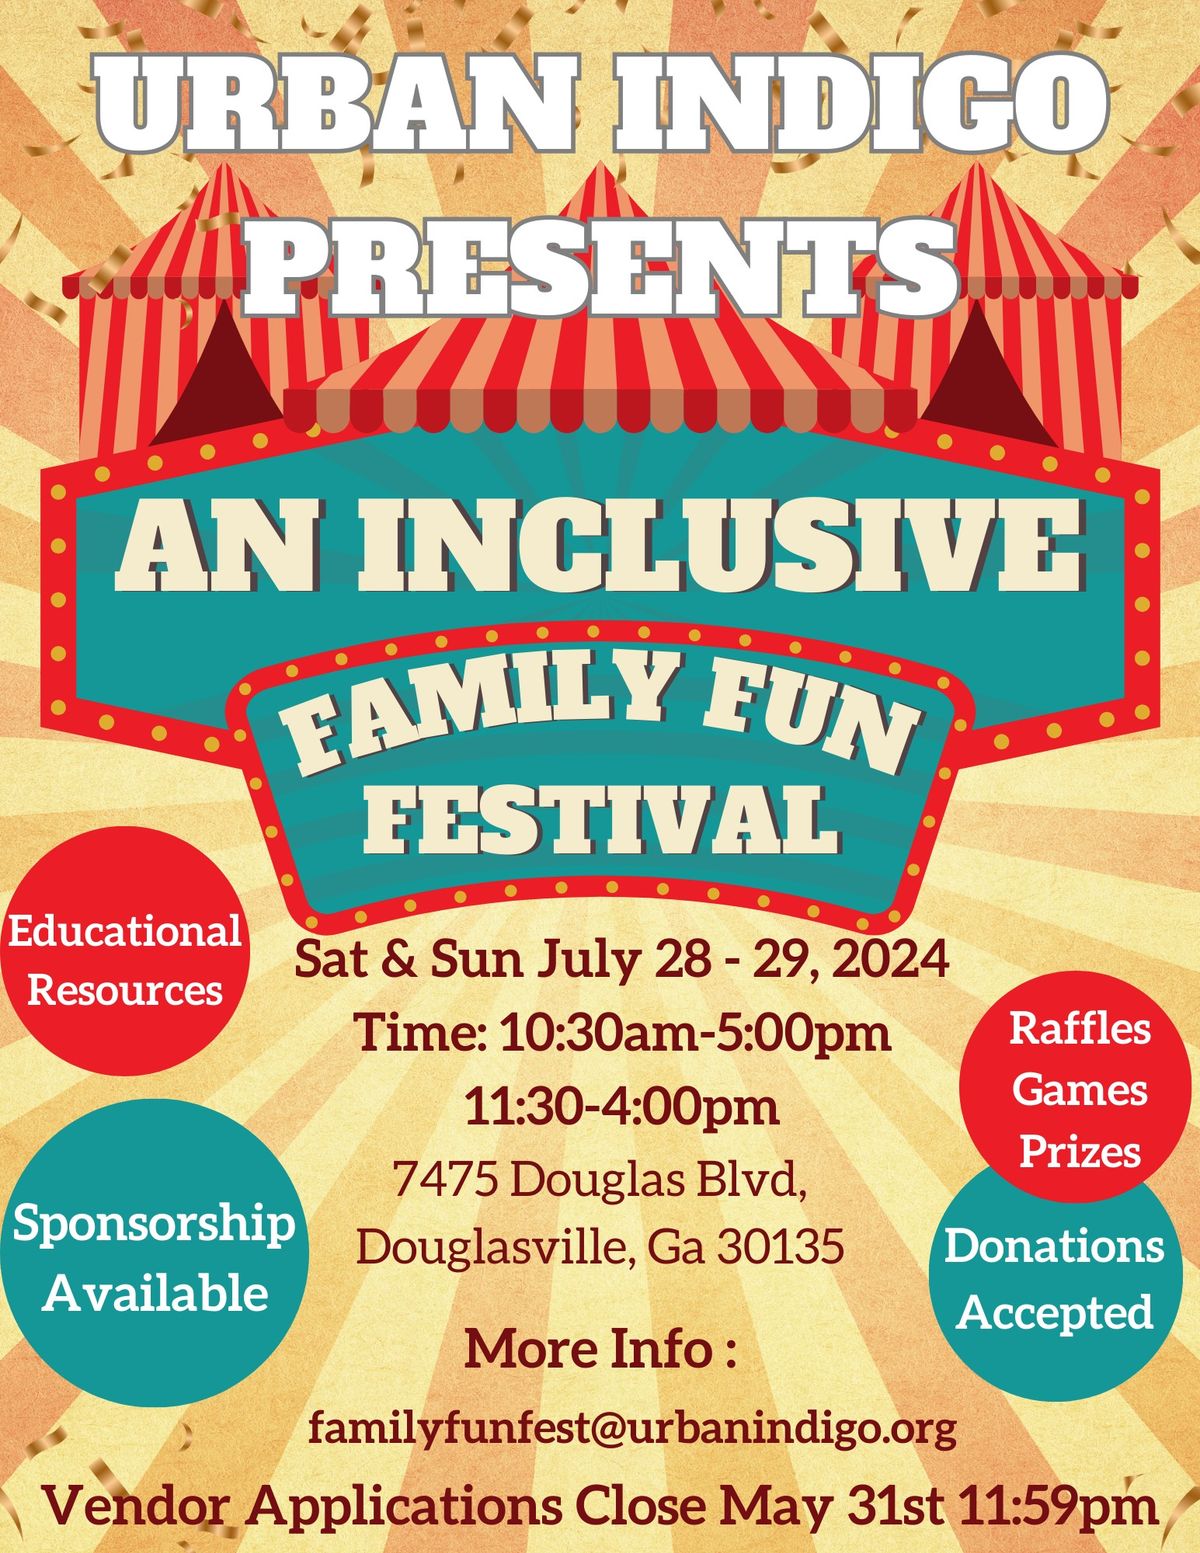 Urban Indigo Foundation's Inclusive Family Fun Fest